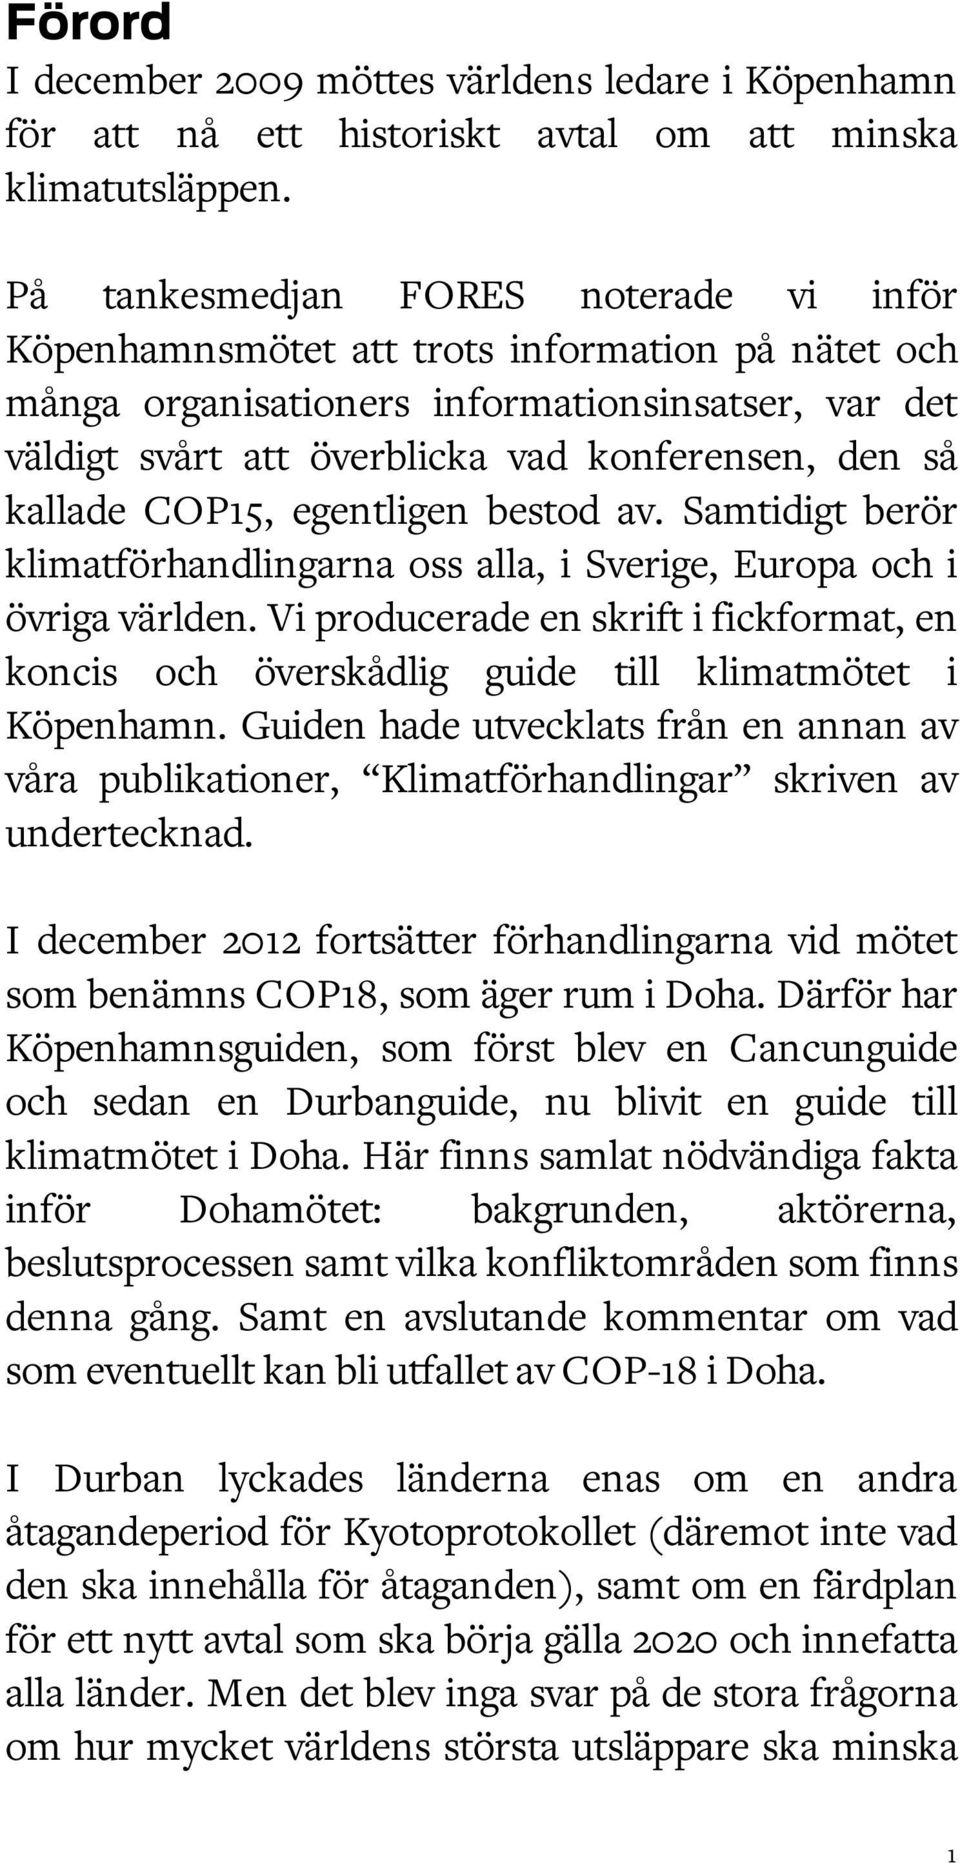 kallade COP15, egentligen bestod av. Samtidigt berör klimatförhandlingarna oss alla, i Sverige, Europa och i övriga världen.